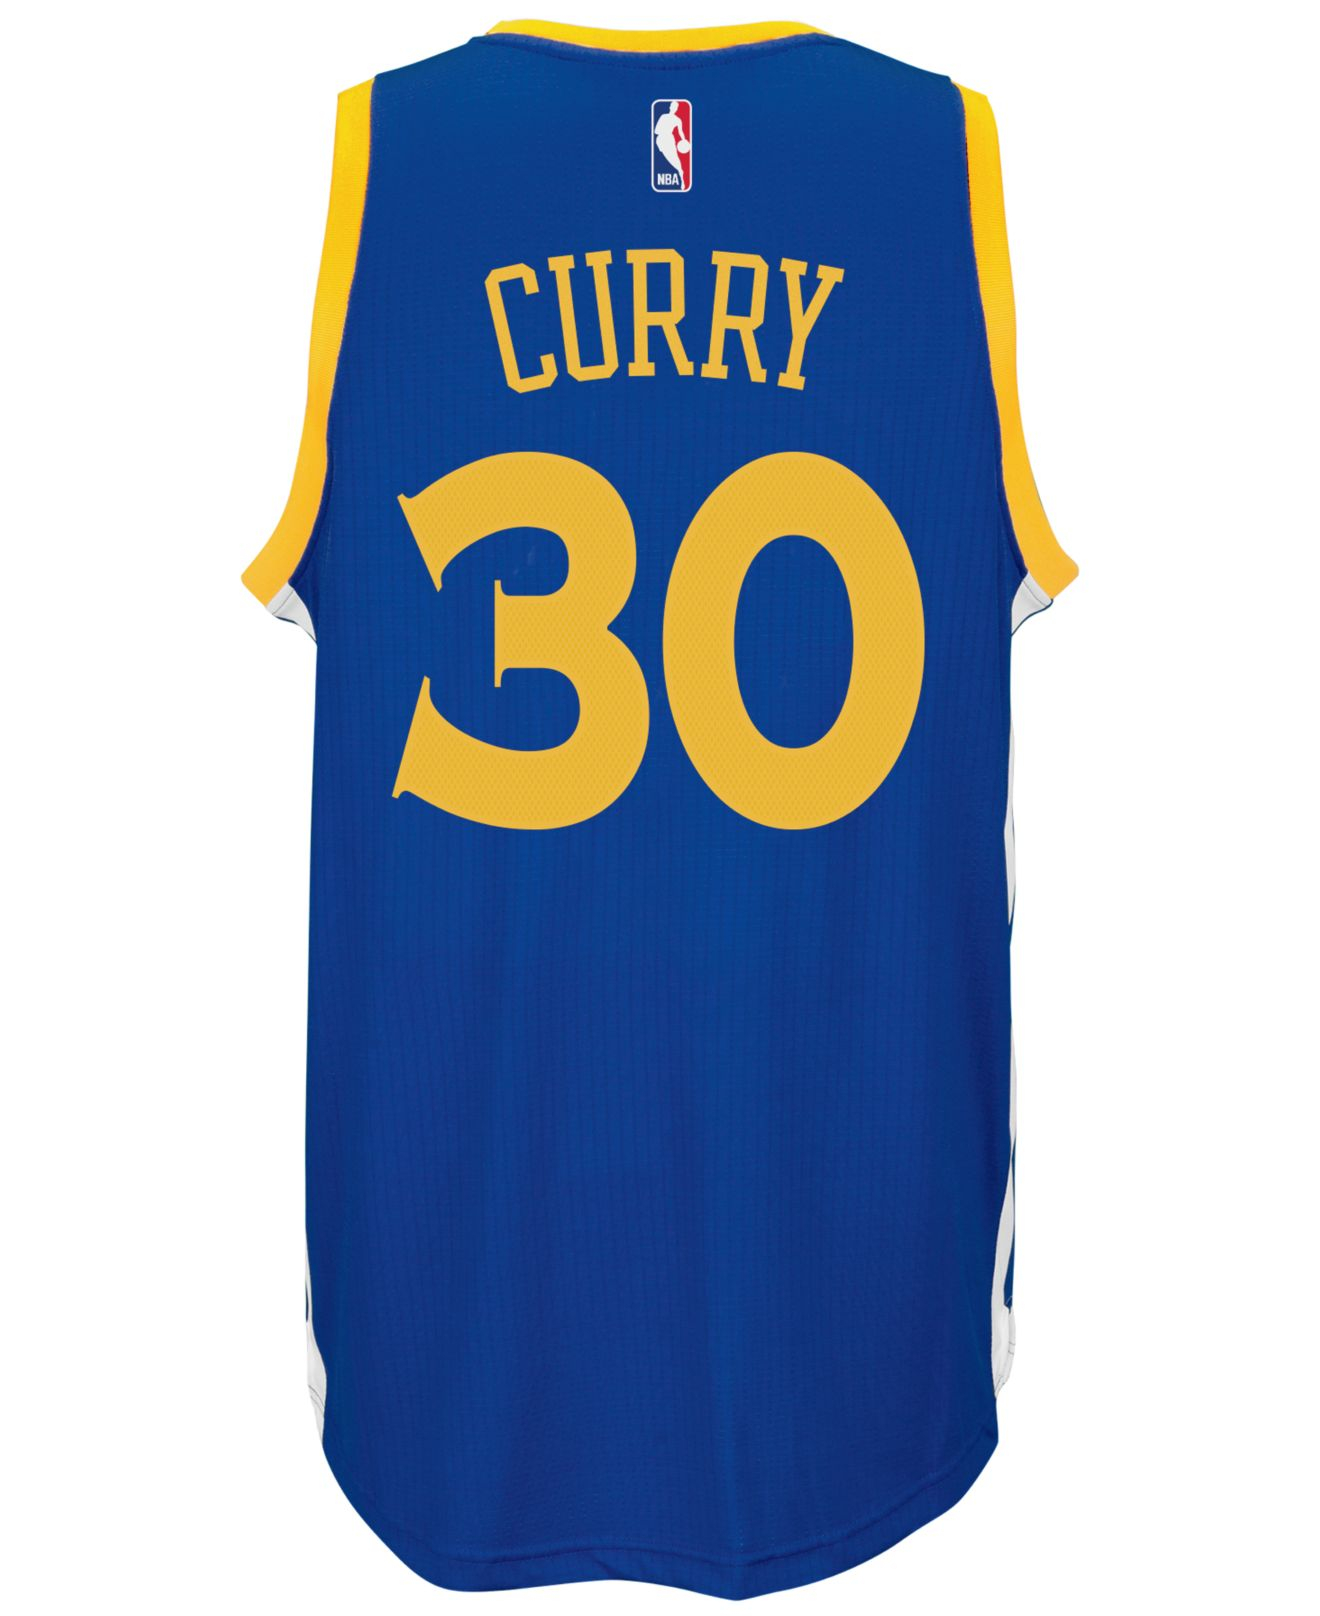 Adidas originals Men's Stephen Curry Golden State Warriors Swingman